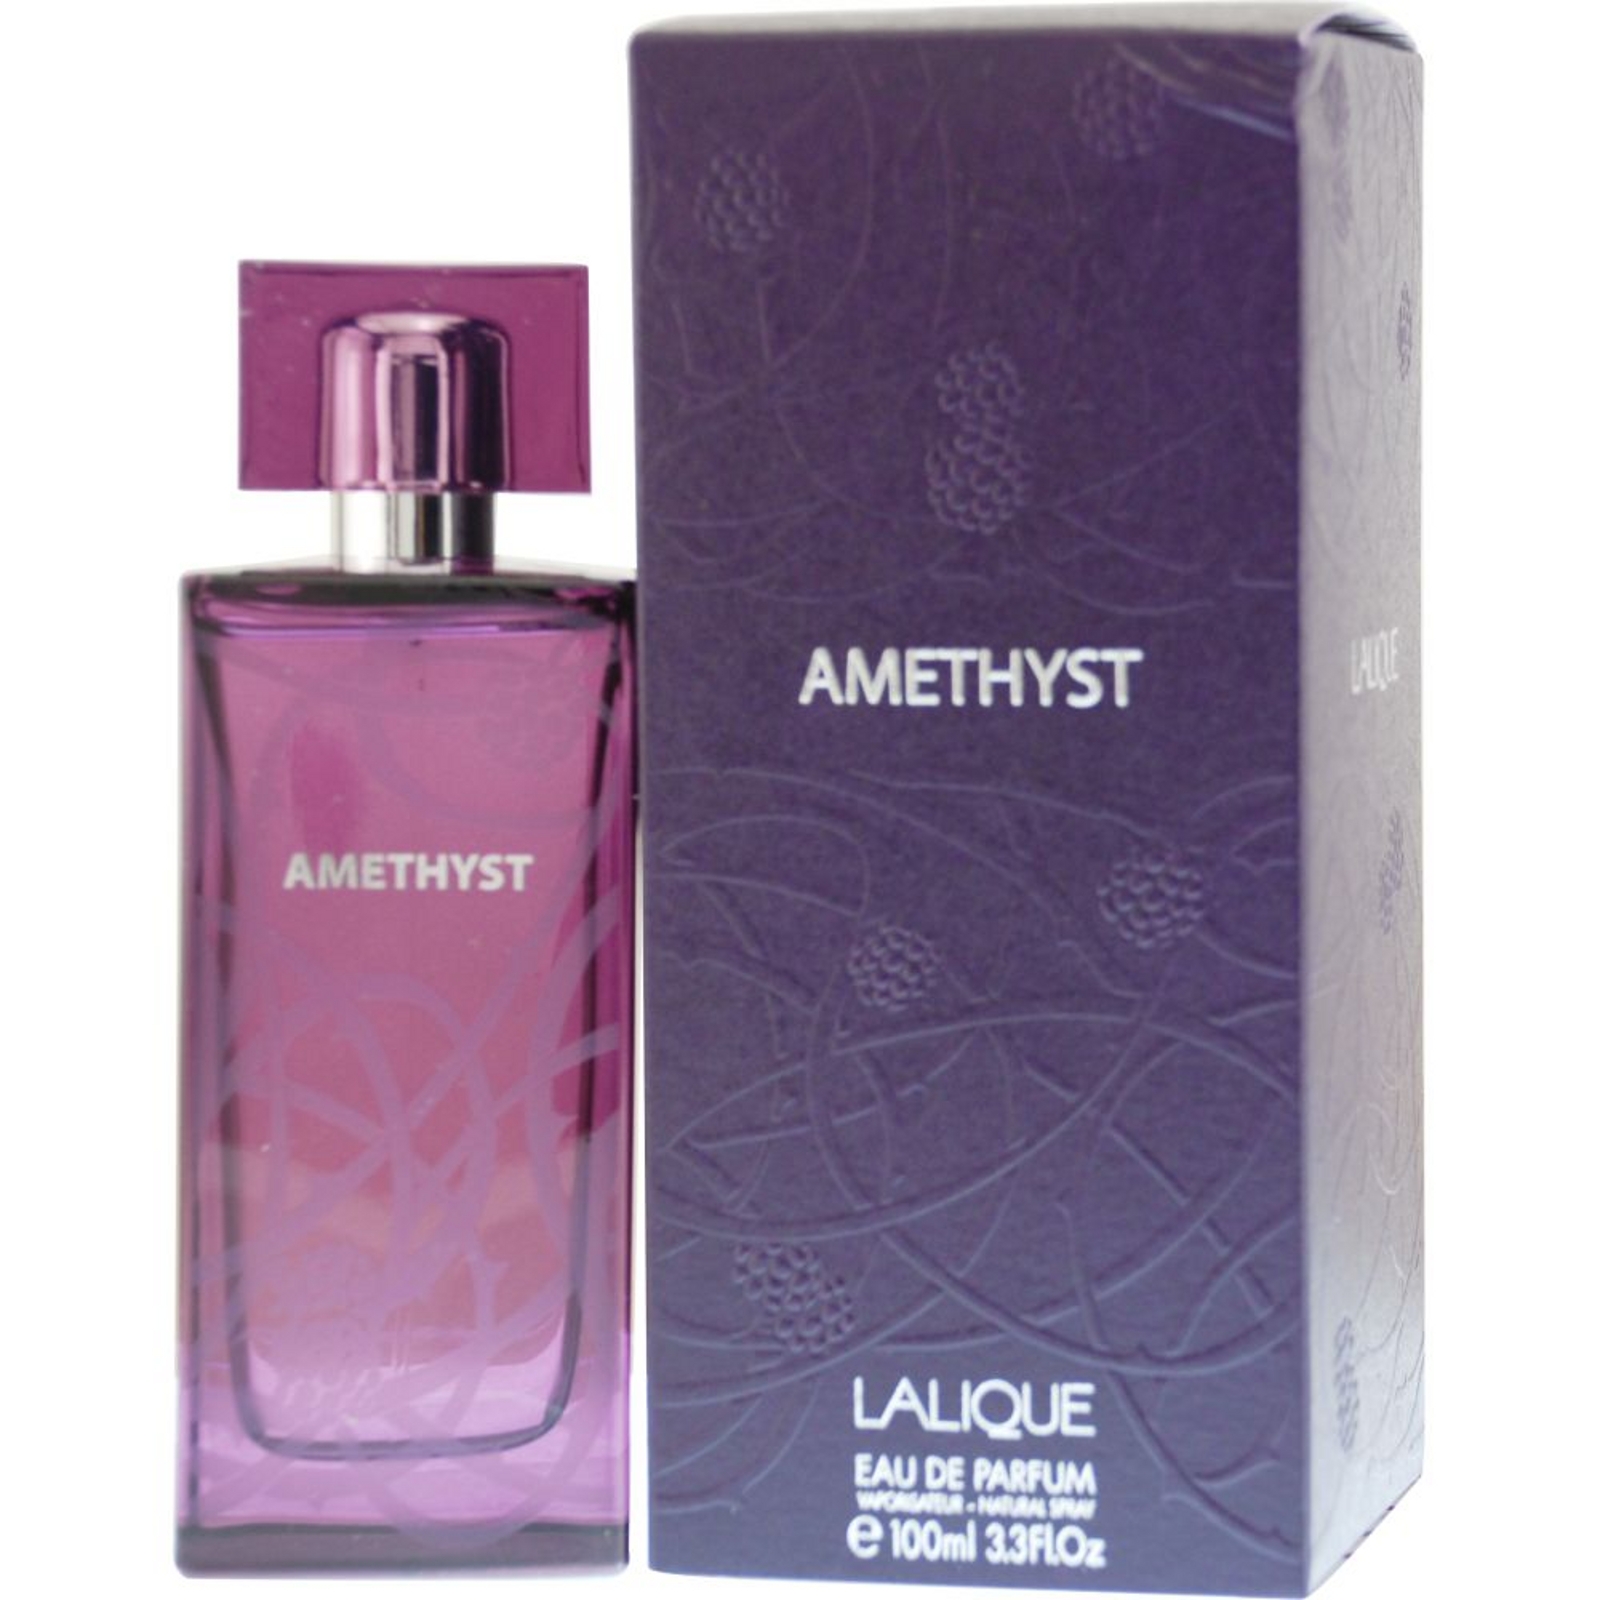 Amethyst Lalique  by Lalique Eau De Parfum Spray 3.4 Oz for Women